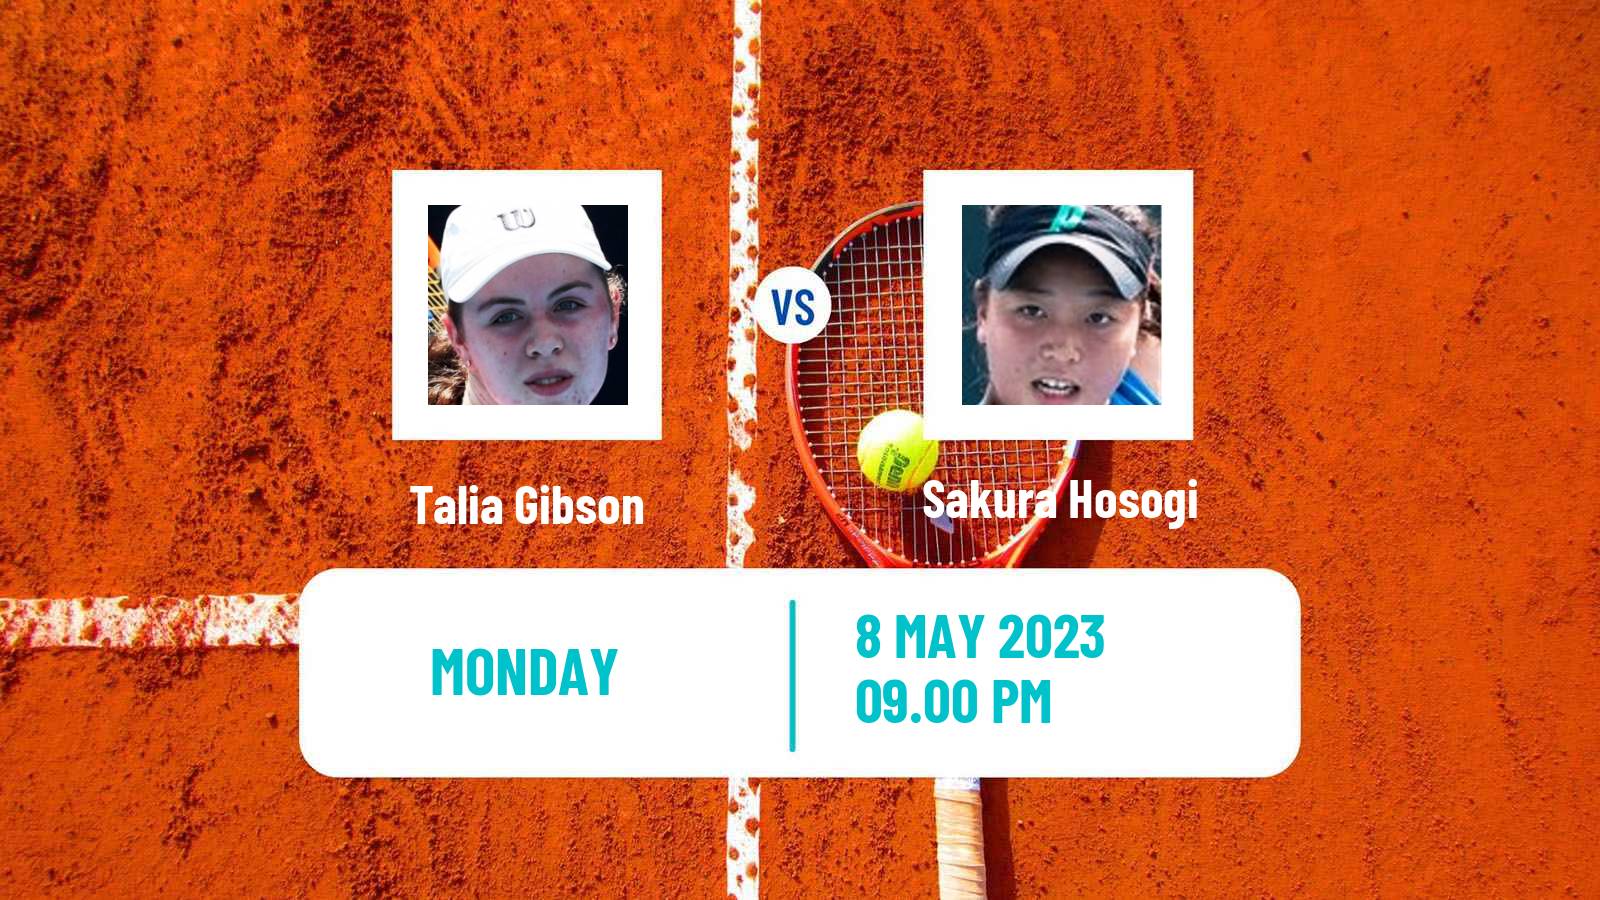 Tennis ITF Tournaments Talia Gibson - Sakura Hosogi